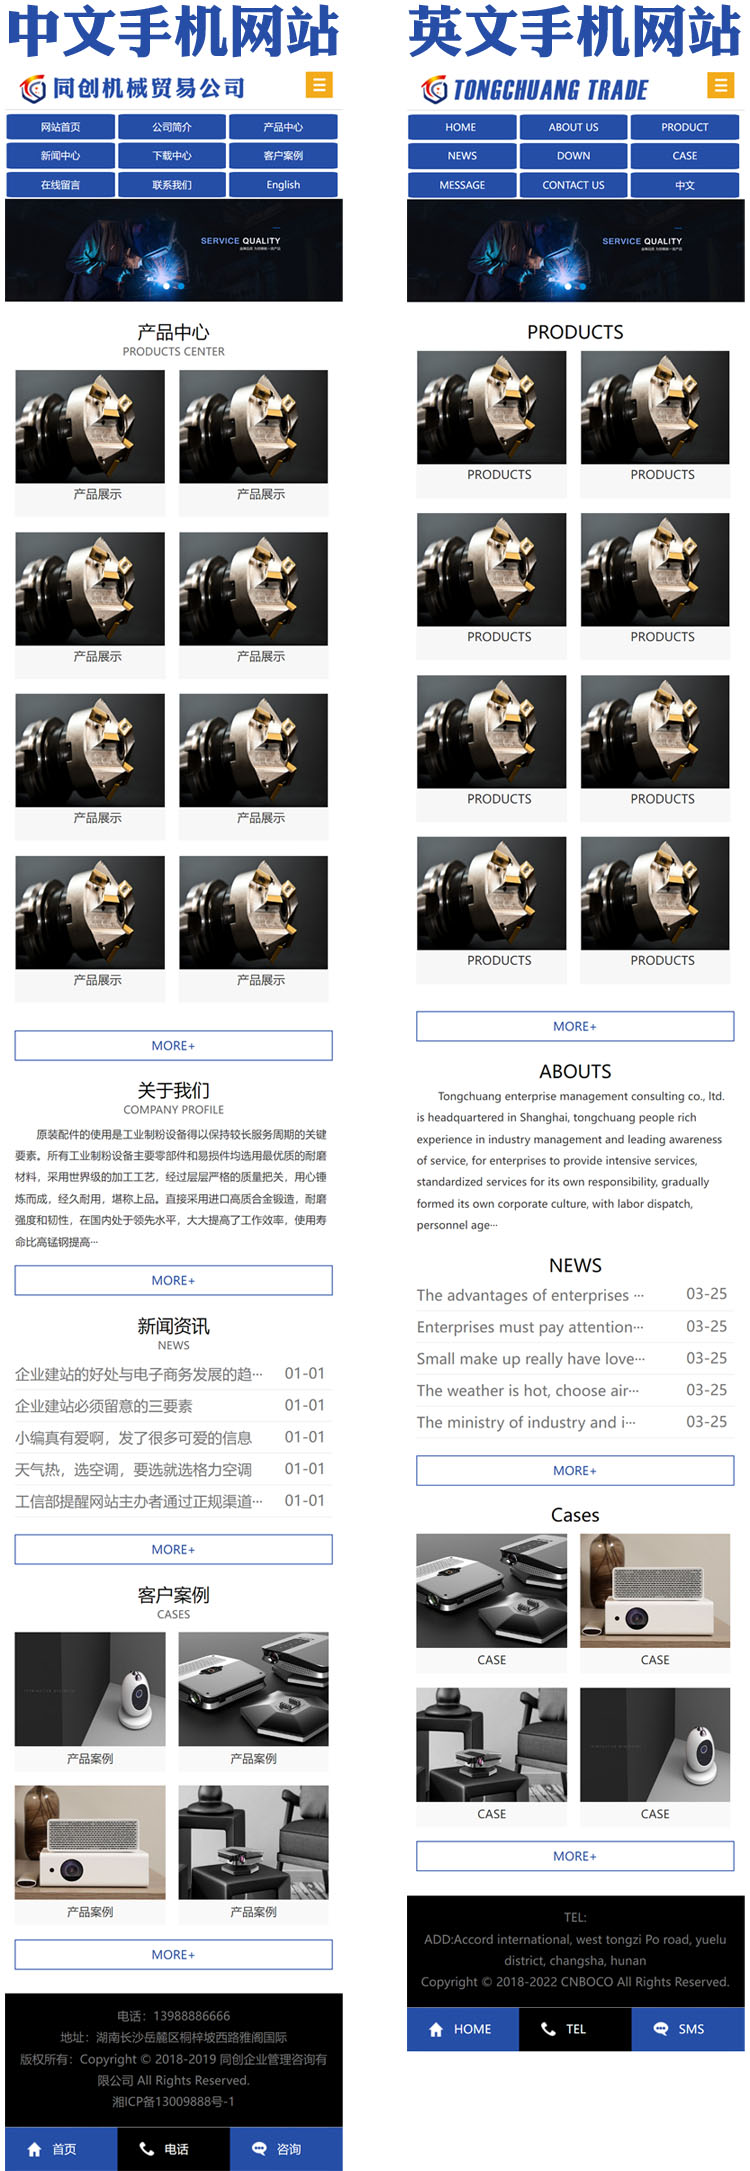 中英文企业网站代码程序-SY017-4